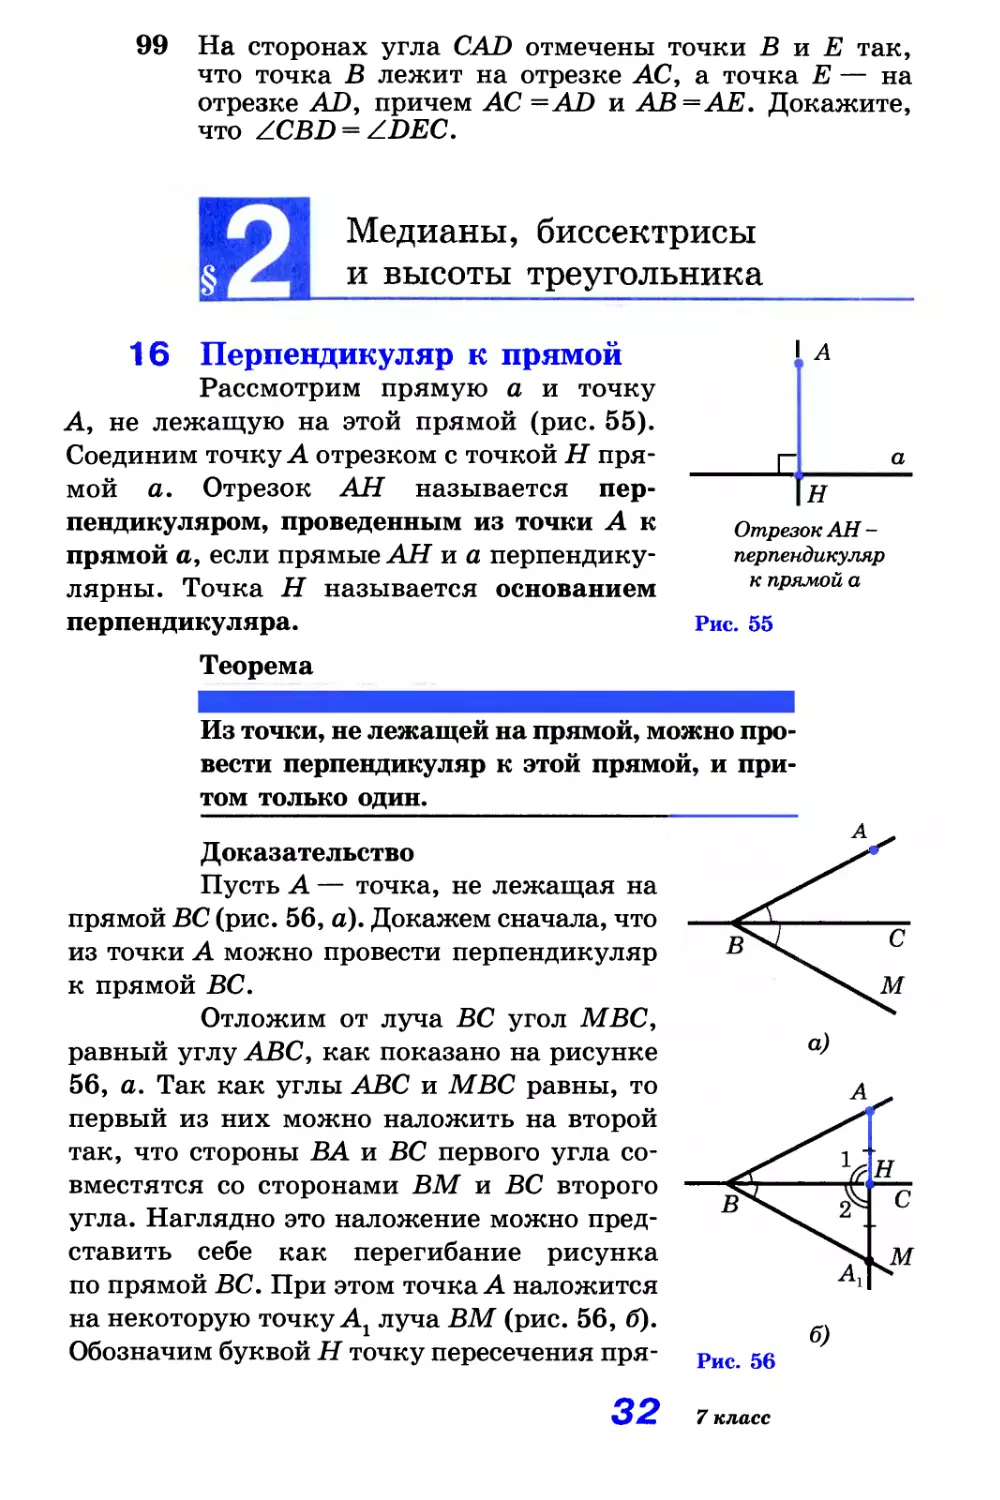 § 2. Медианы, биссектрисы и высоты треугольника